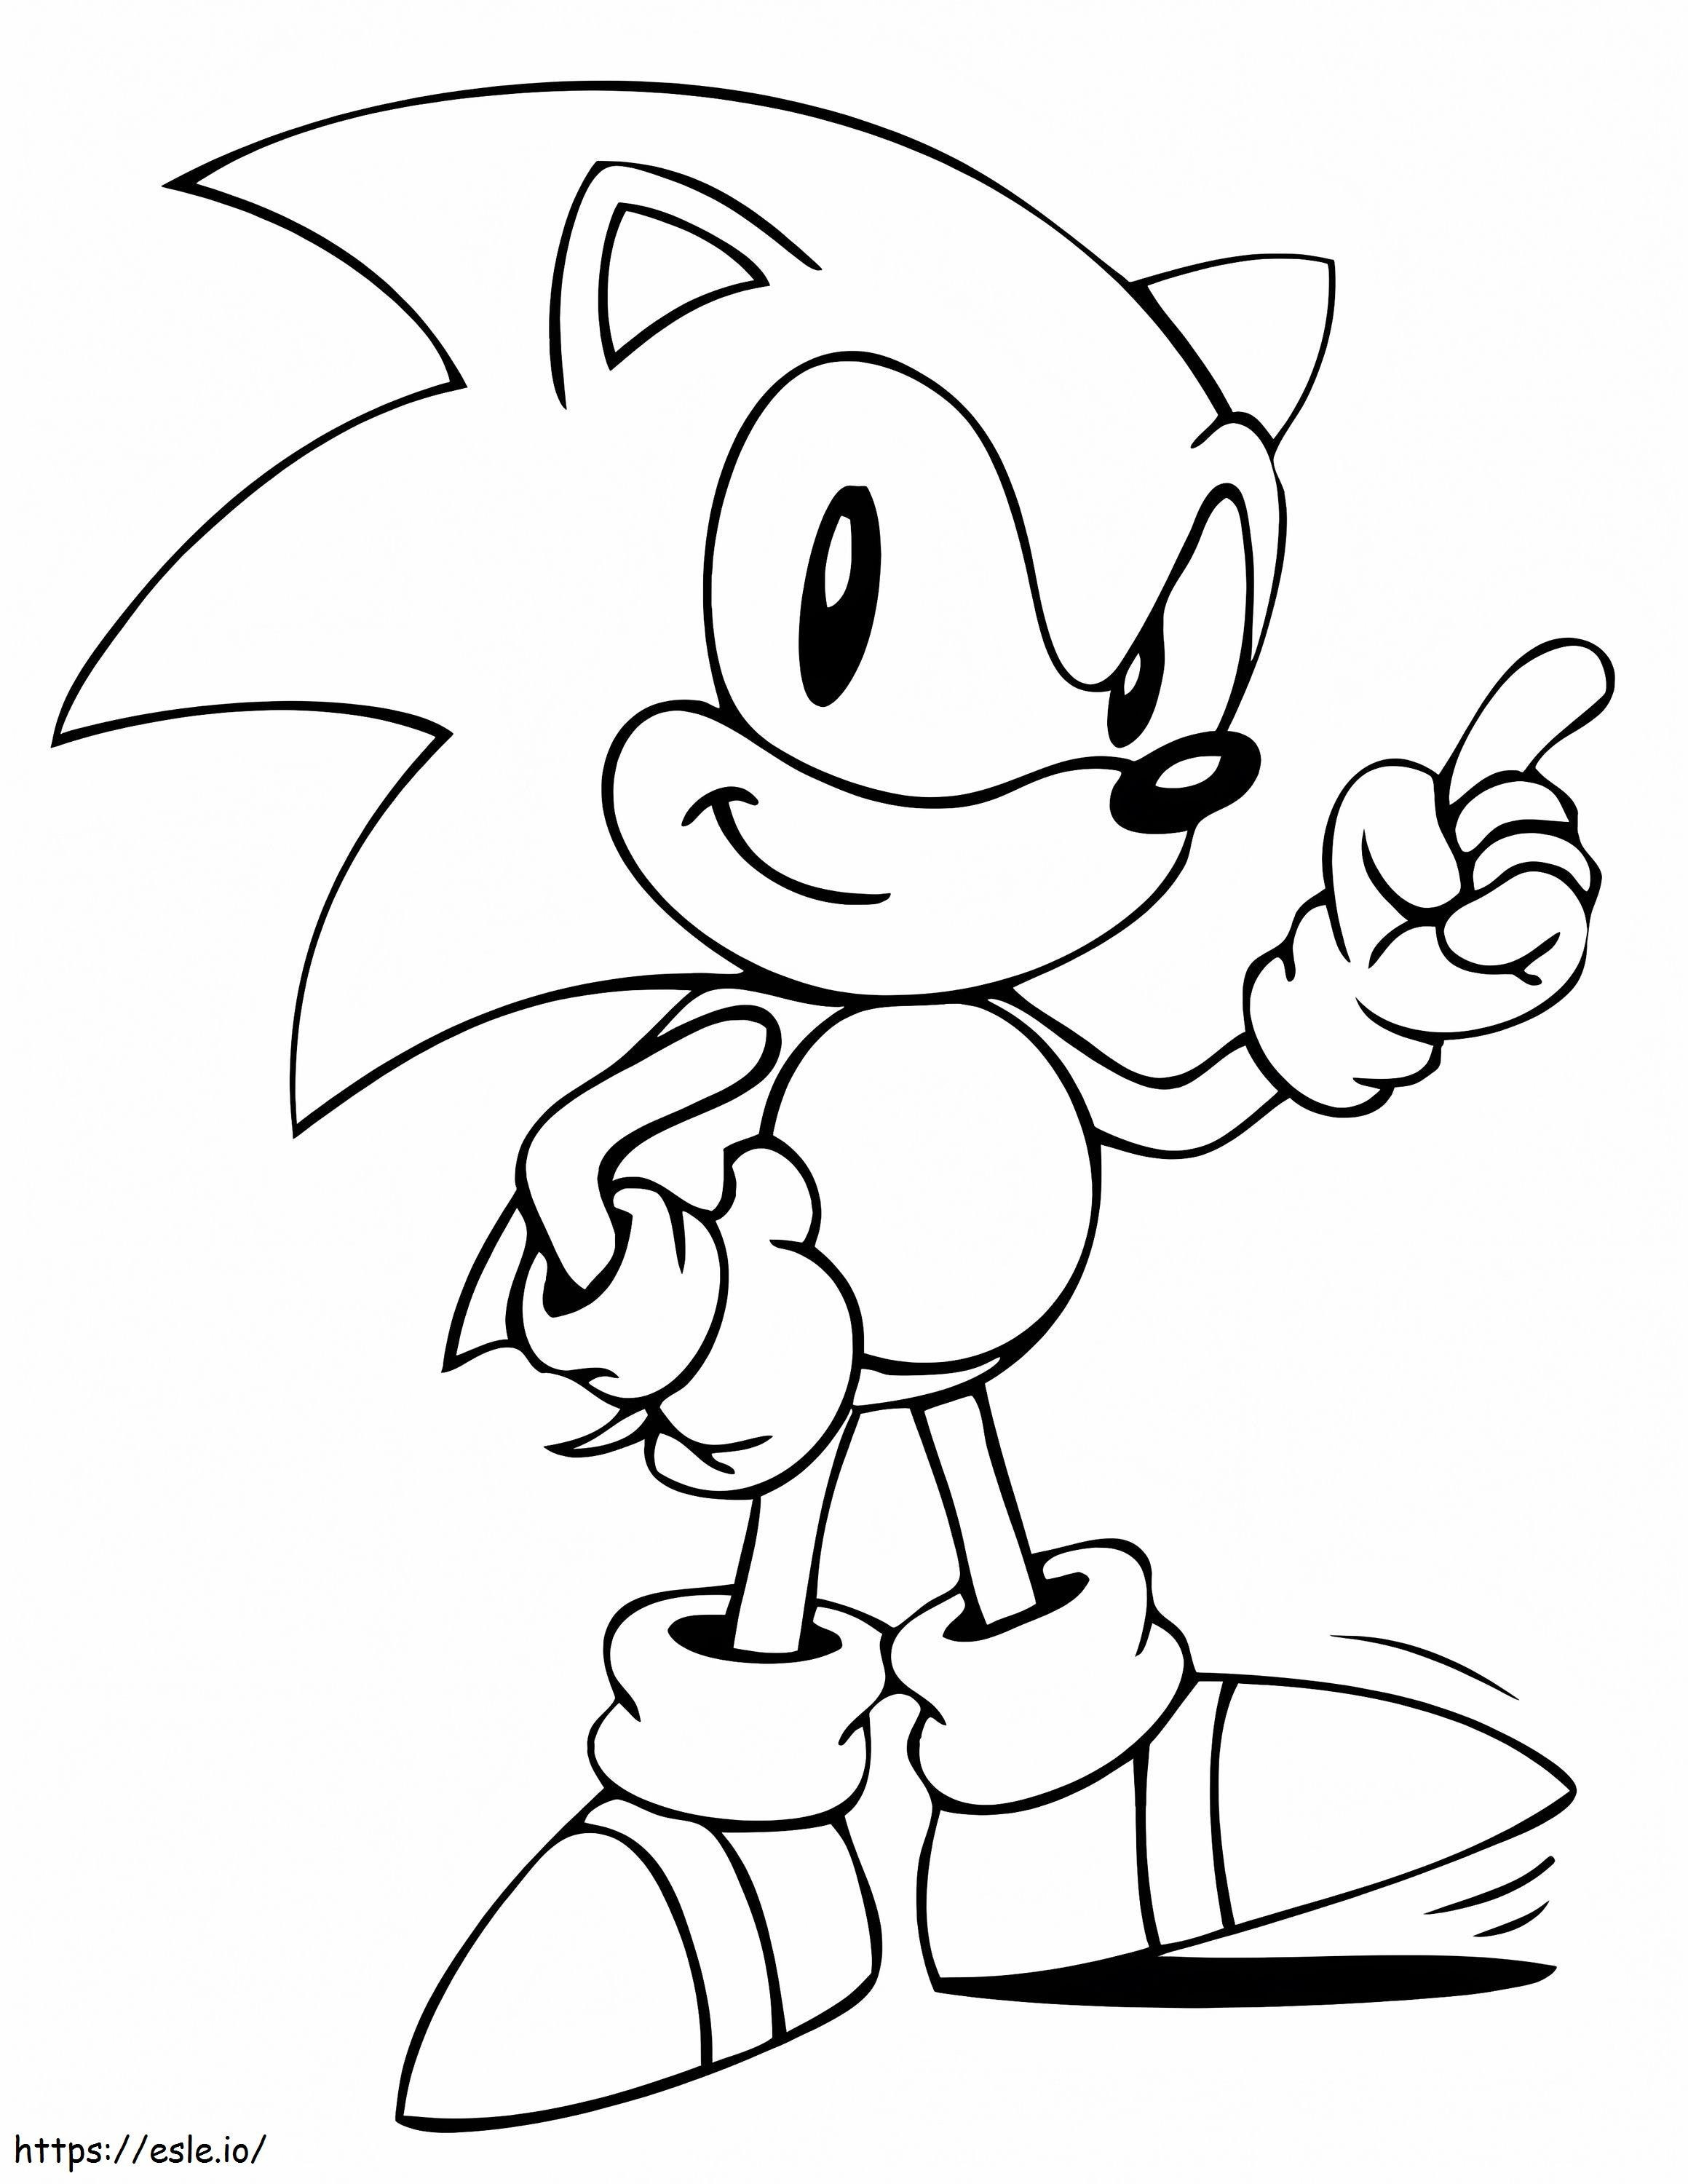 Népszerű Sonic kifestő